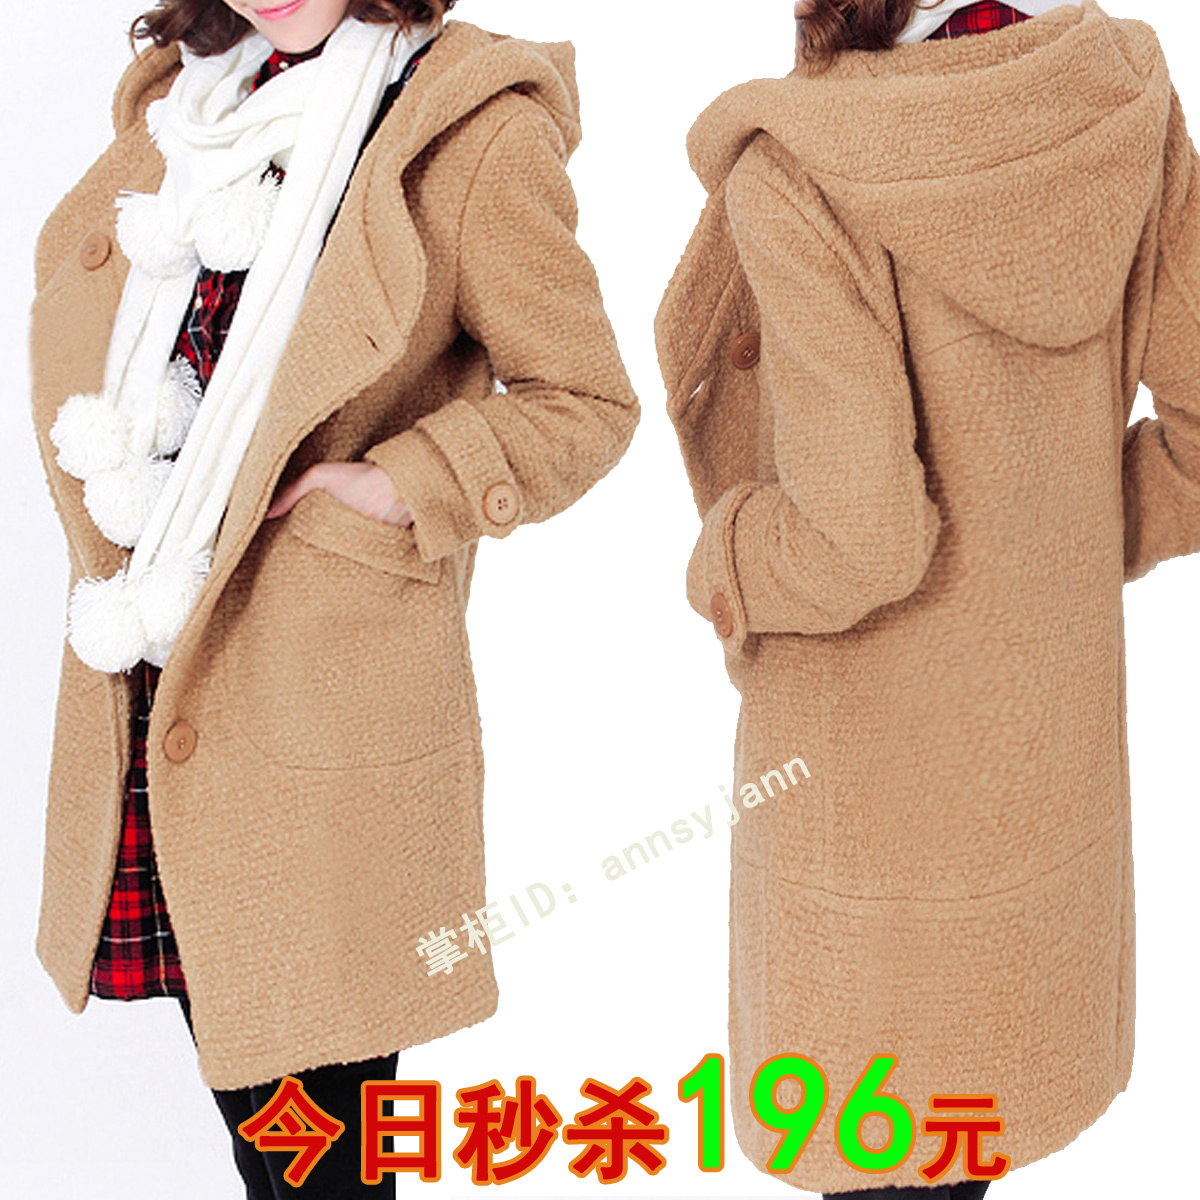 秋装新2011新品款专柜正品羊毛呢大衣韩国韩版冬羊绒呢子女装外套